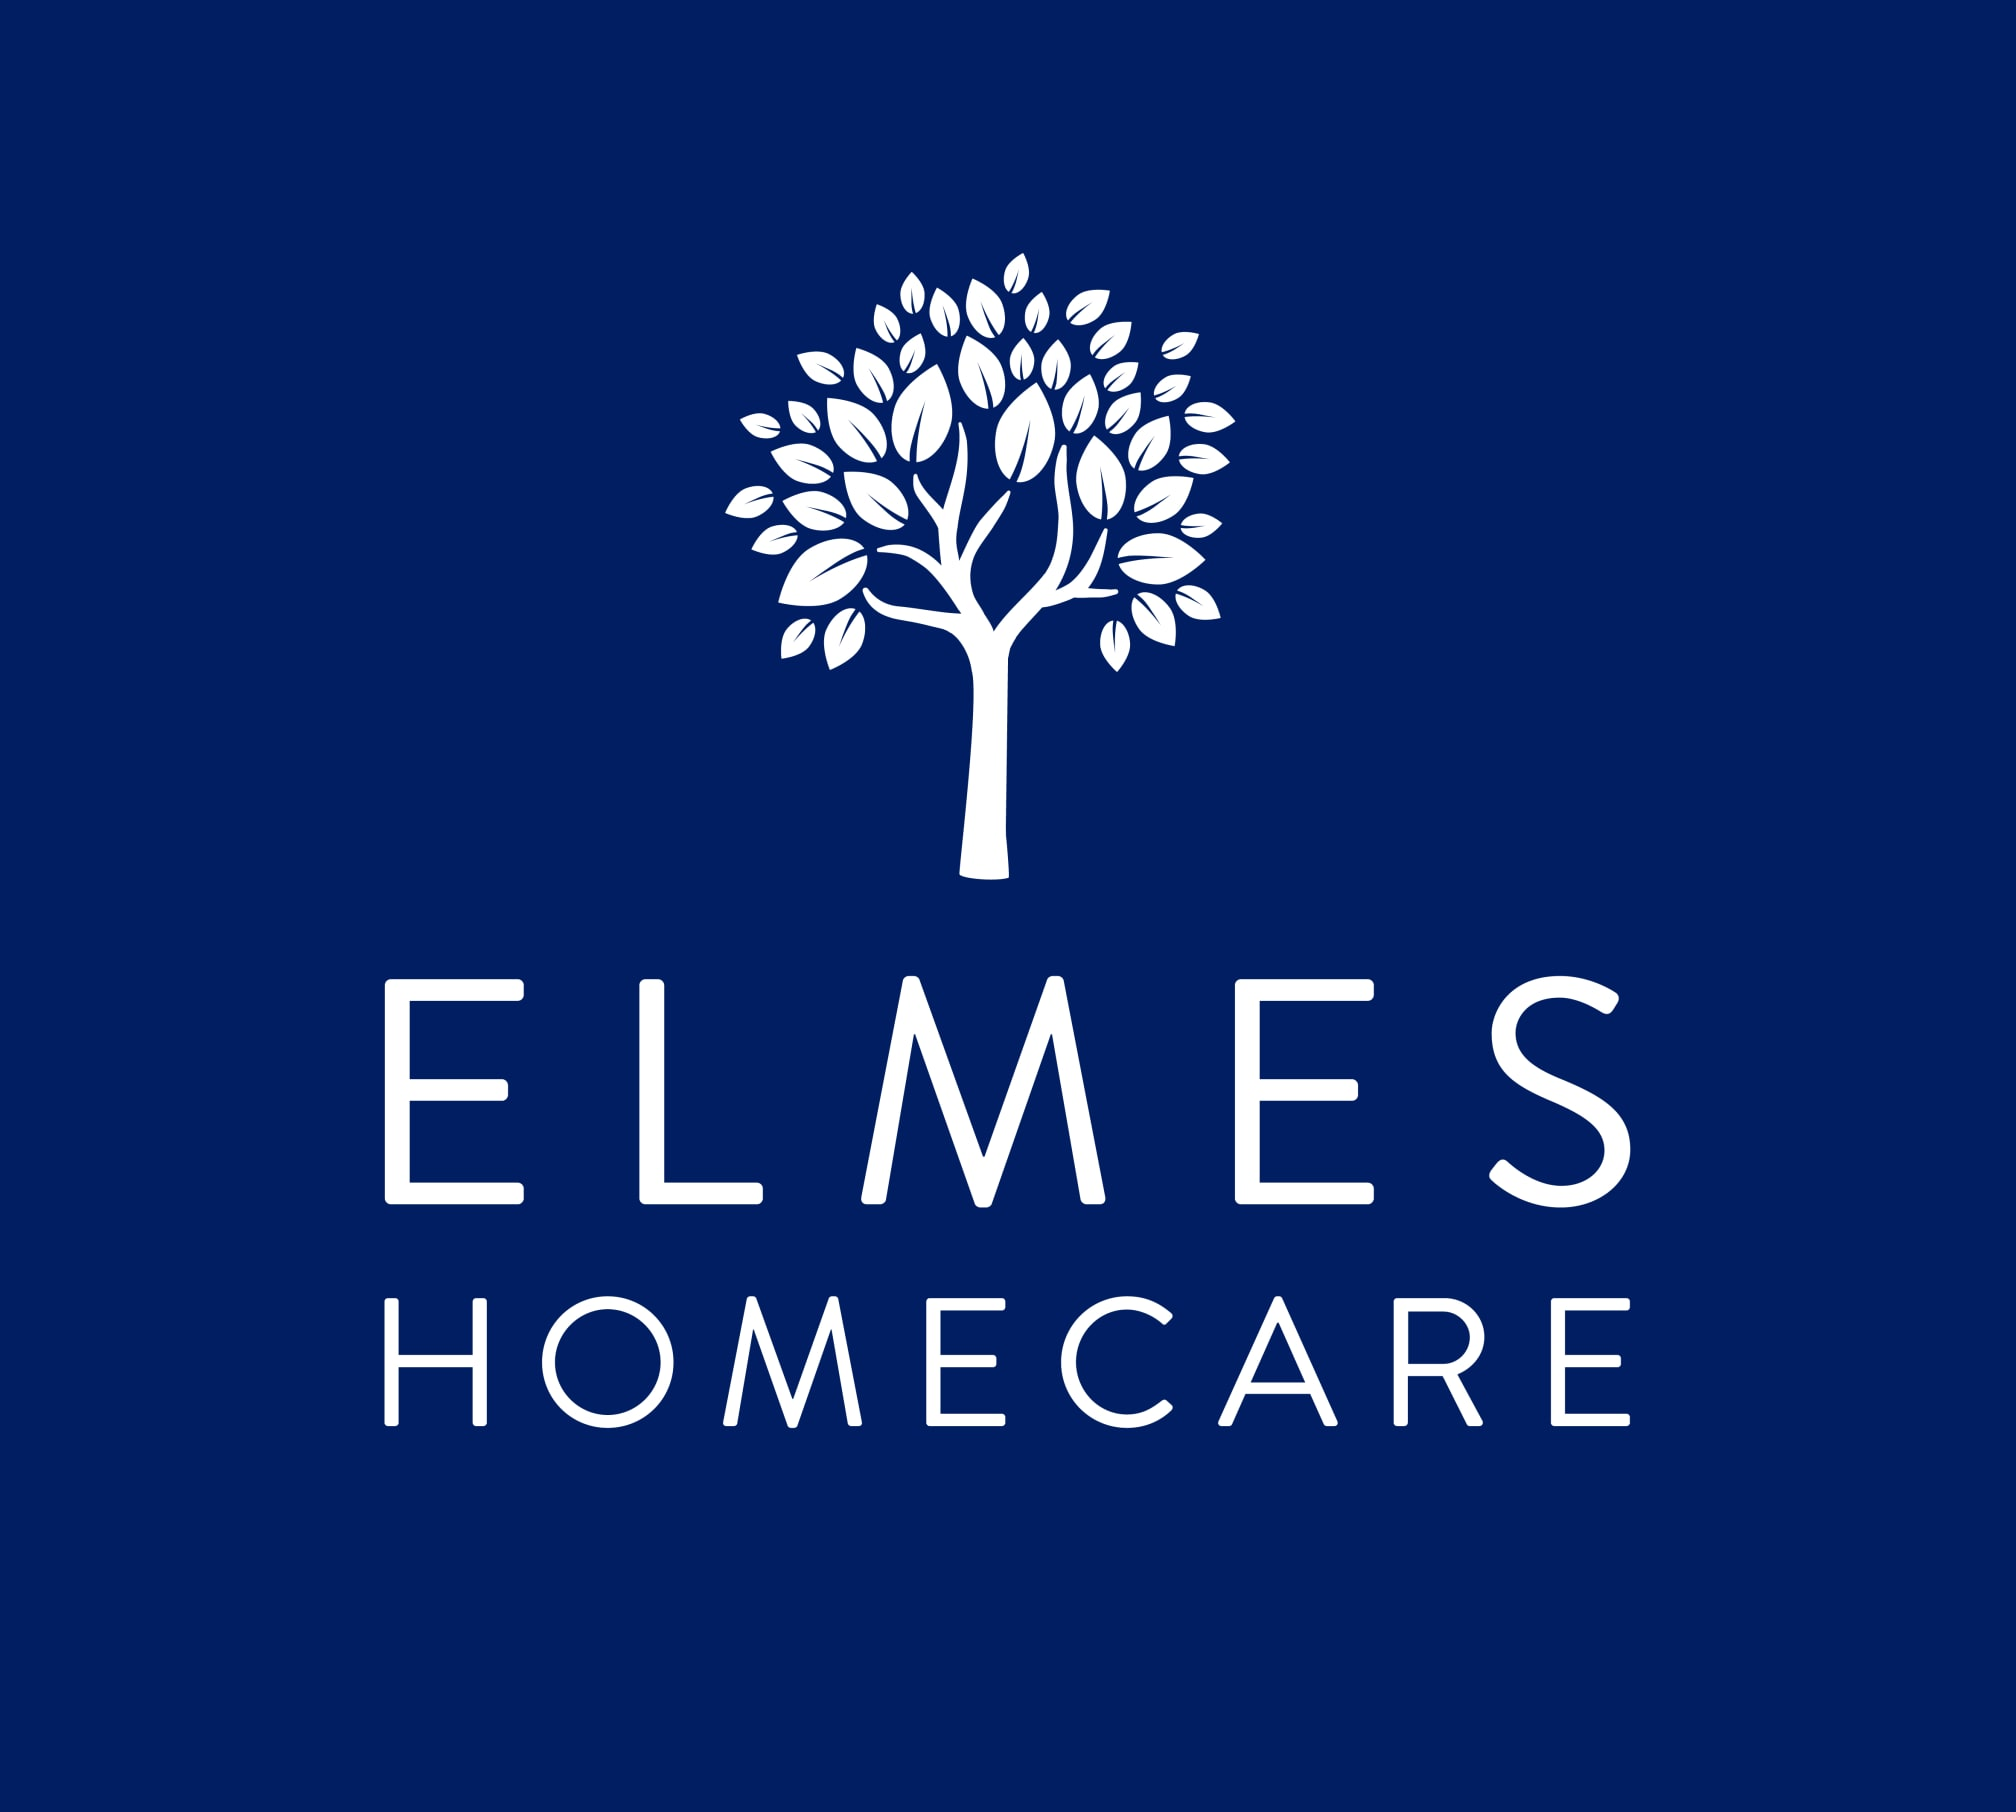 Elmes Homecare Beckenham 020 8658 7285